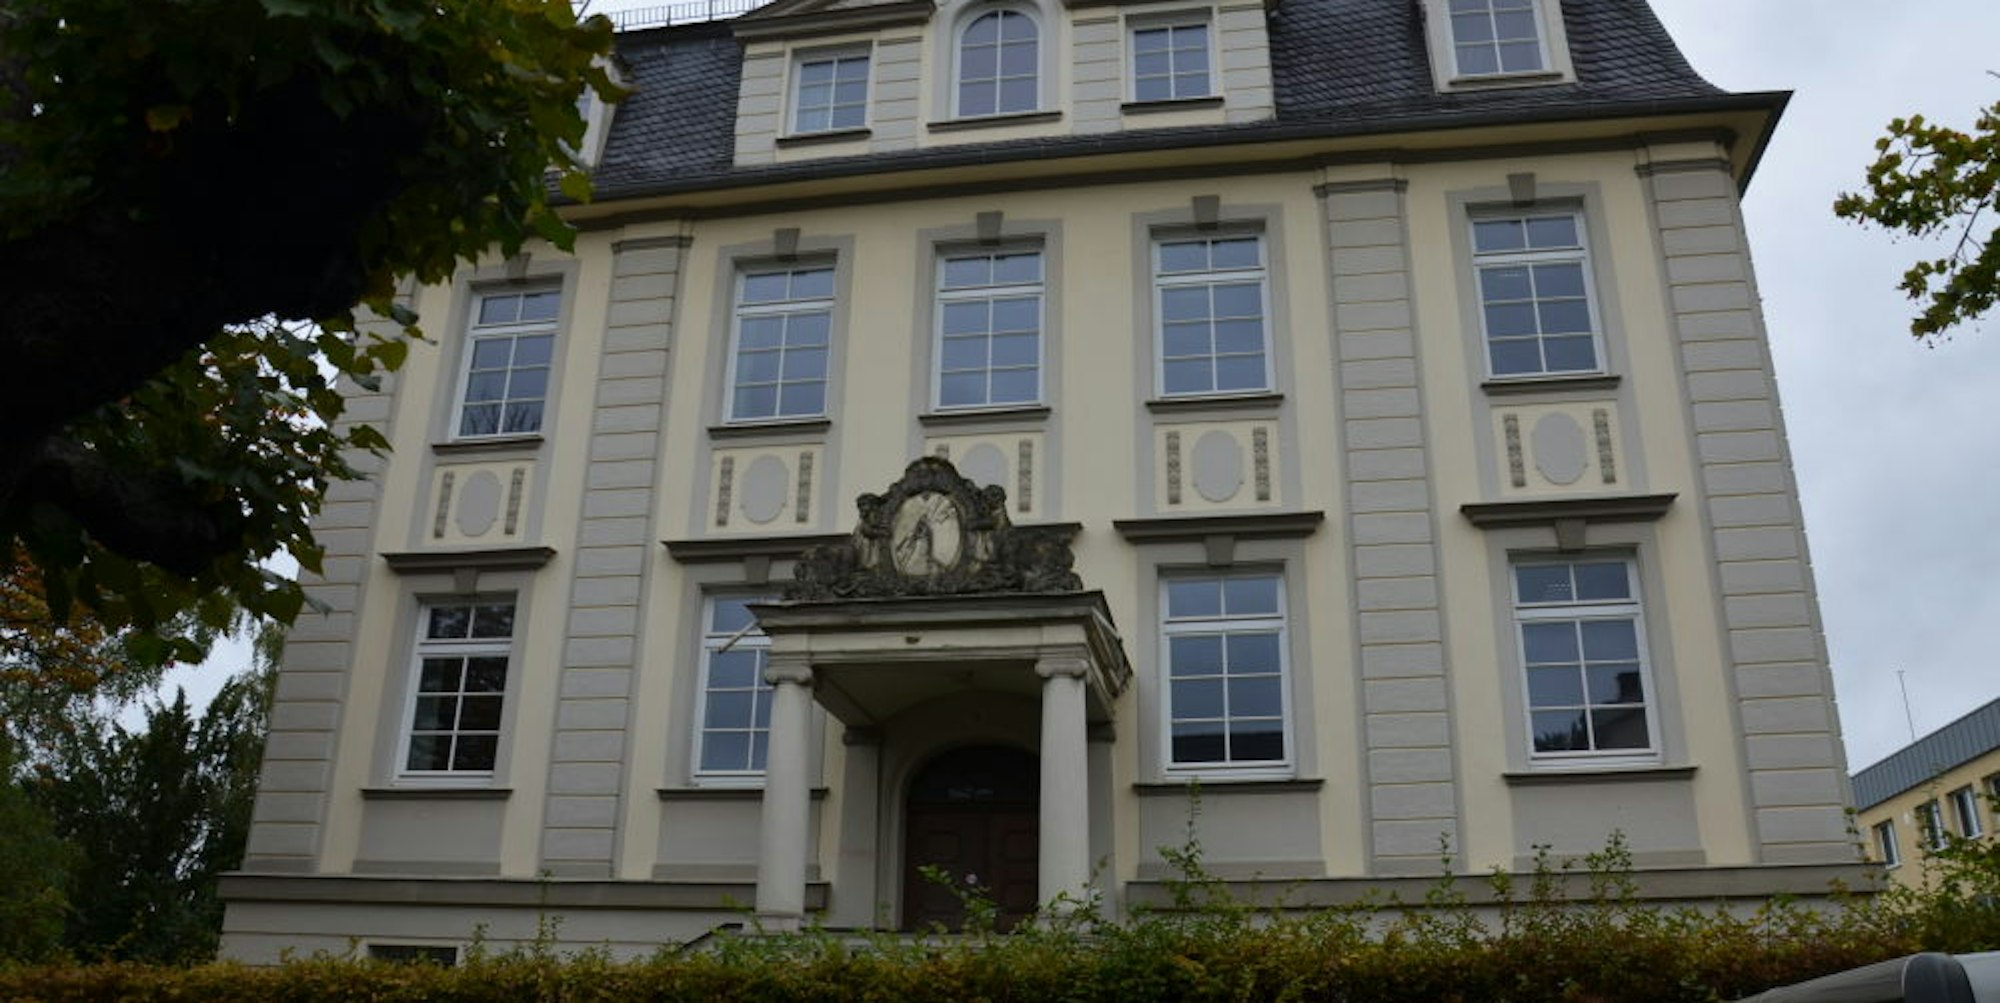 Die Villa an der Auguste-Viktoria-Straße diente jahrzehntelang dem Energiekonzern RWE als Dependance. Das Vordach über dem Eingang schmückt ein Blitz-Emblem, das die Elektrizität symbolisiert.